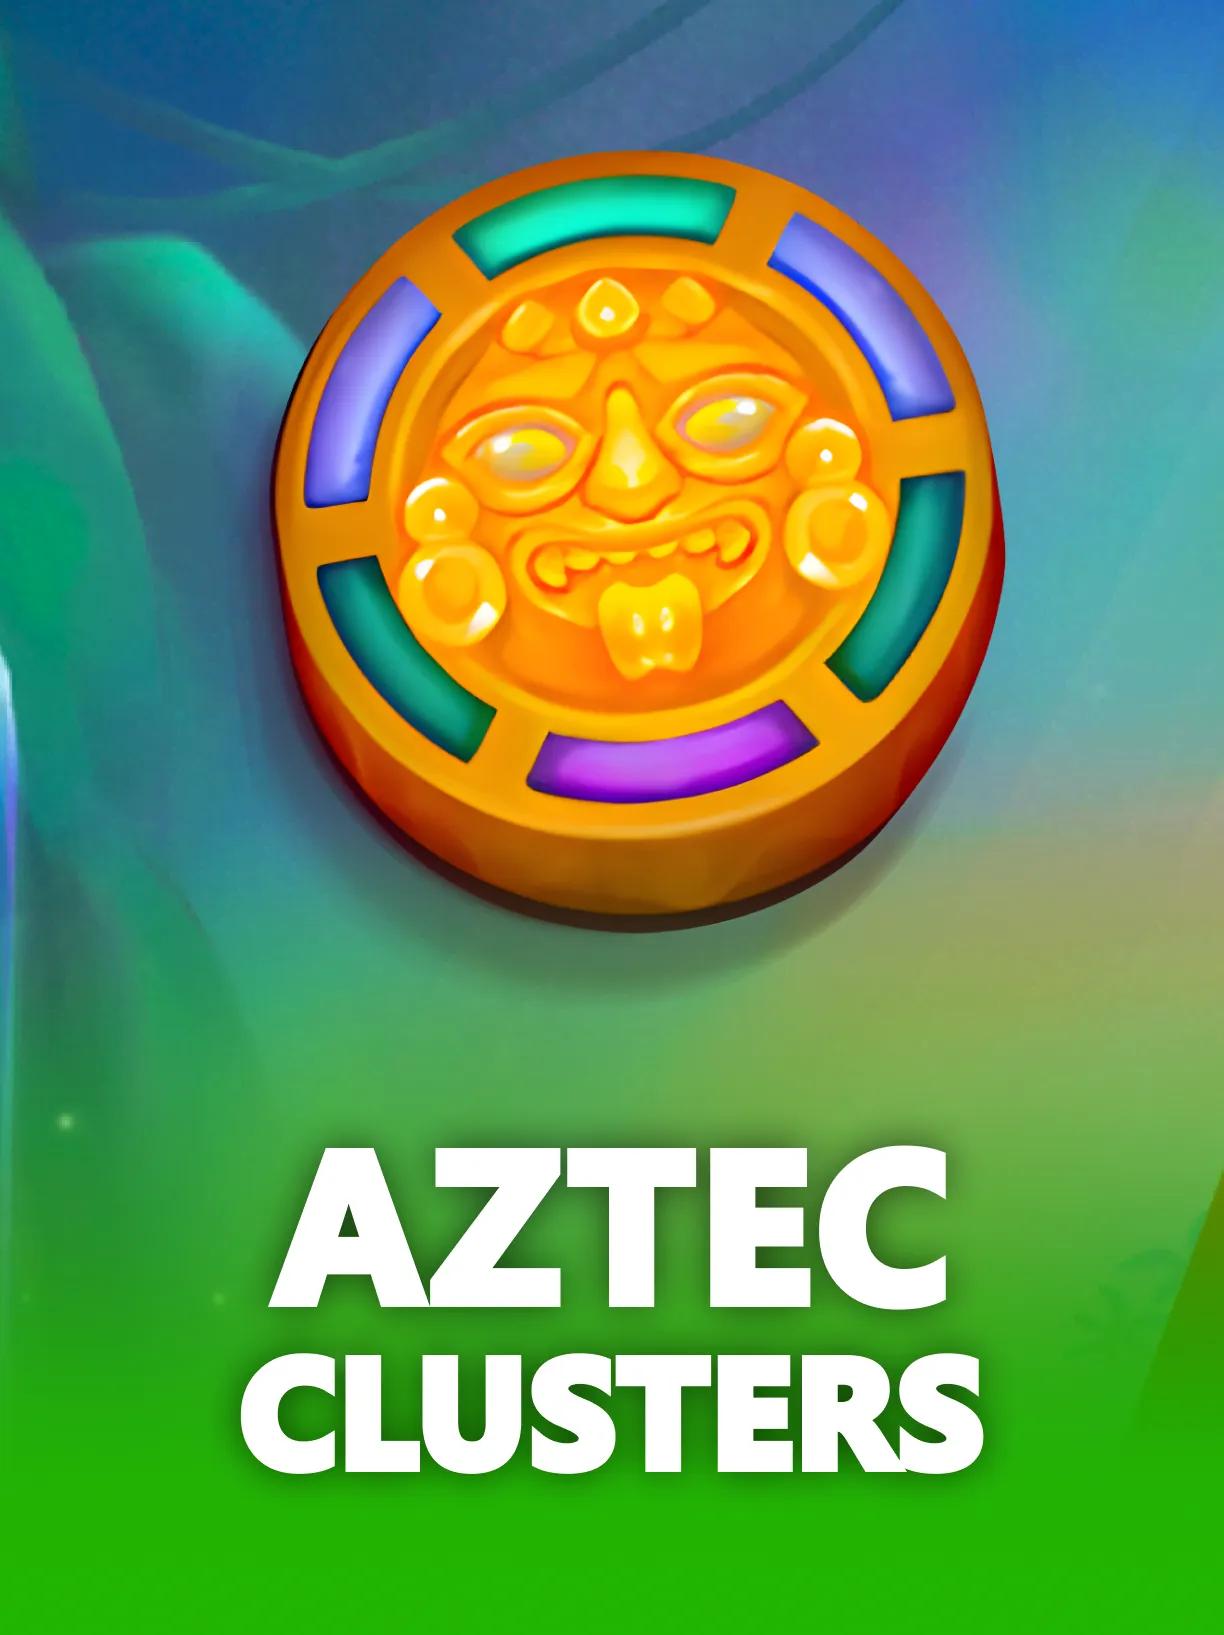 Aztec_Clusters_square.webp